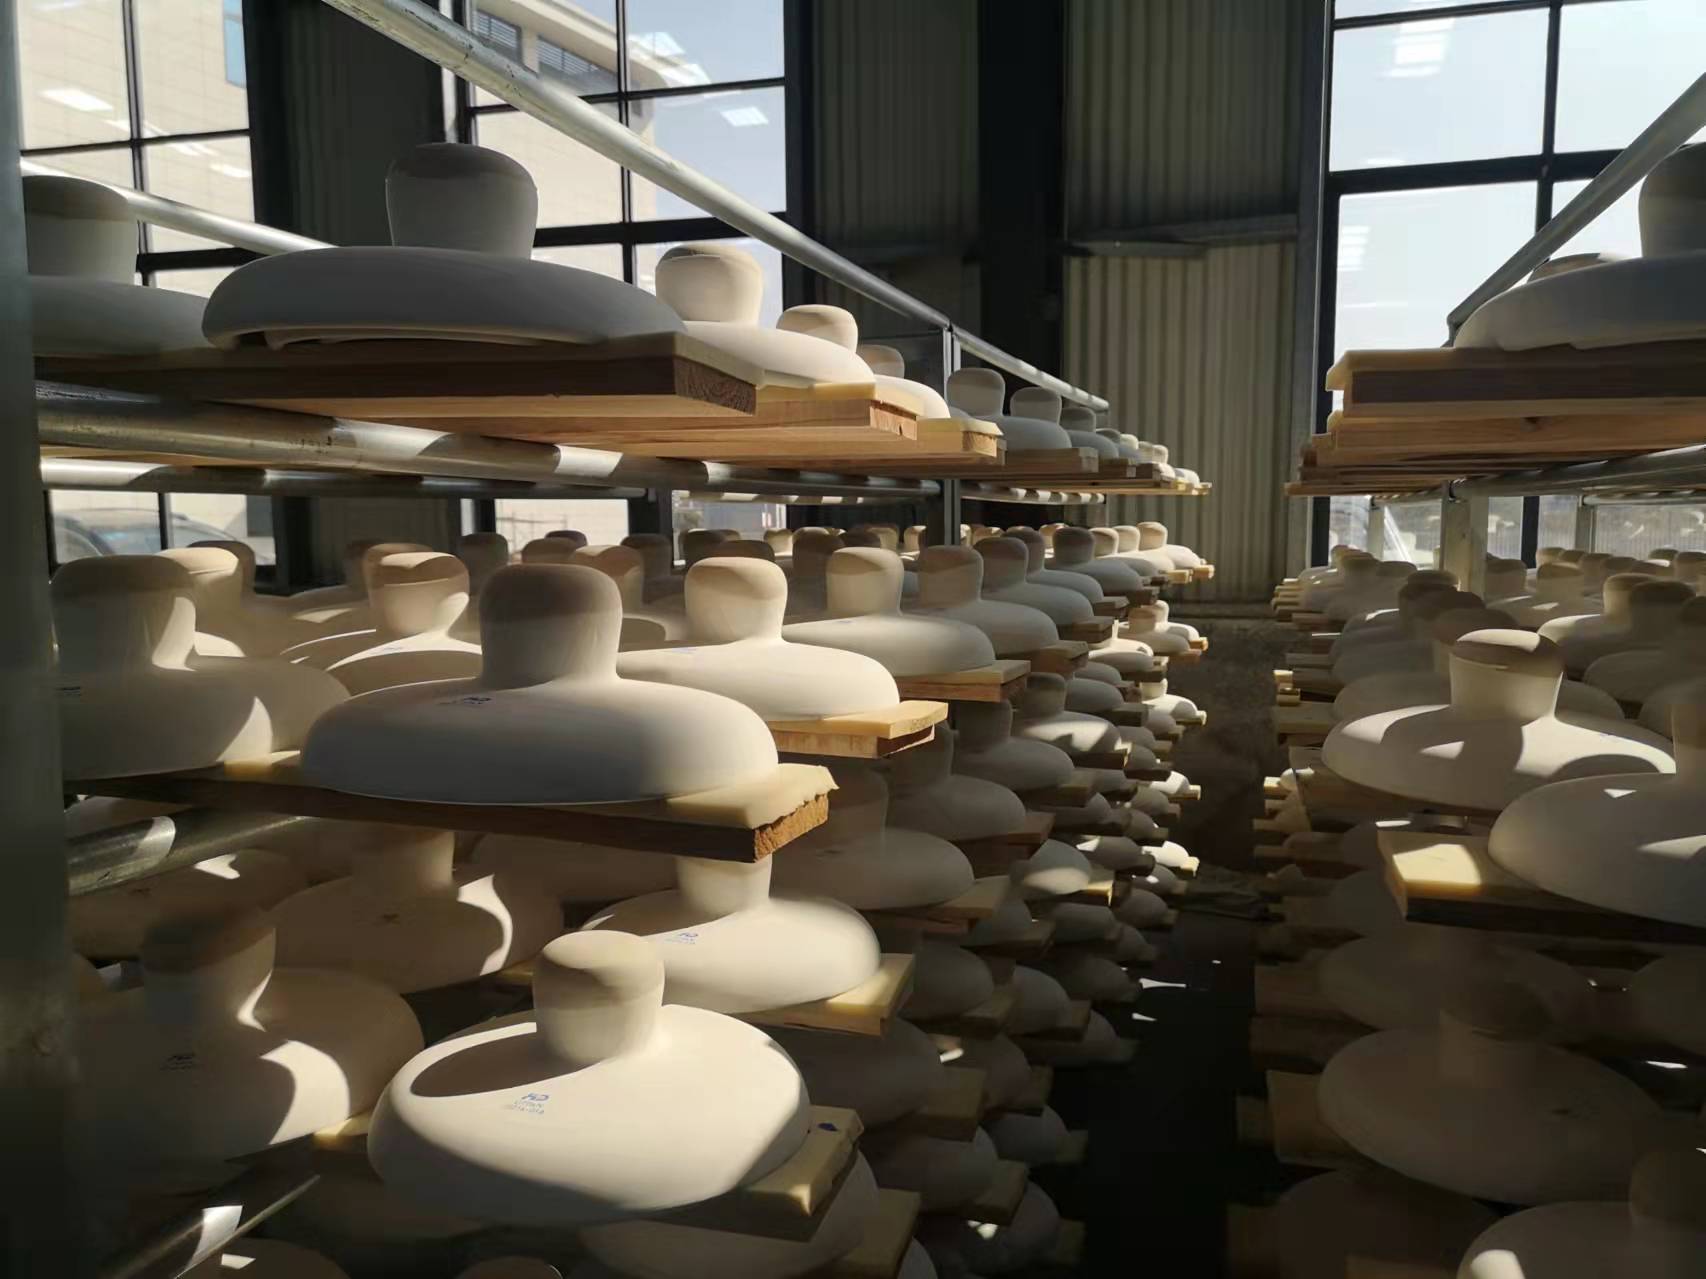 20.000 μονωτήρες δίσκου και 25.000 Αντιρρυπαντικά (διπλό υπόστεγο) Insualtors Porcelain Suspension που εξάγονται στη Βόρεια Αμερική βρίσκονται στην παραγωγή